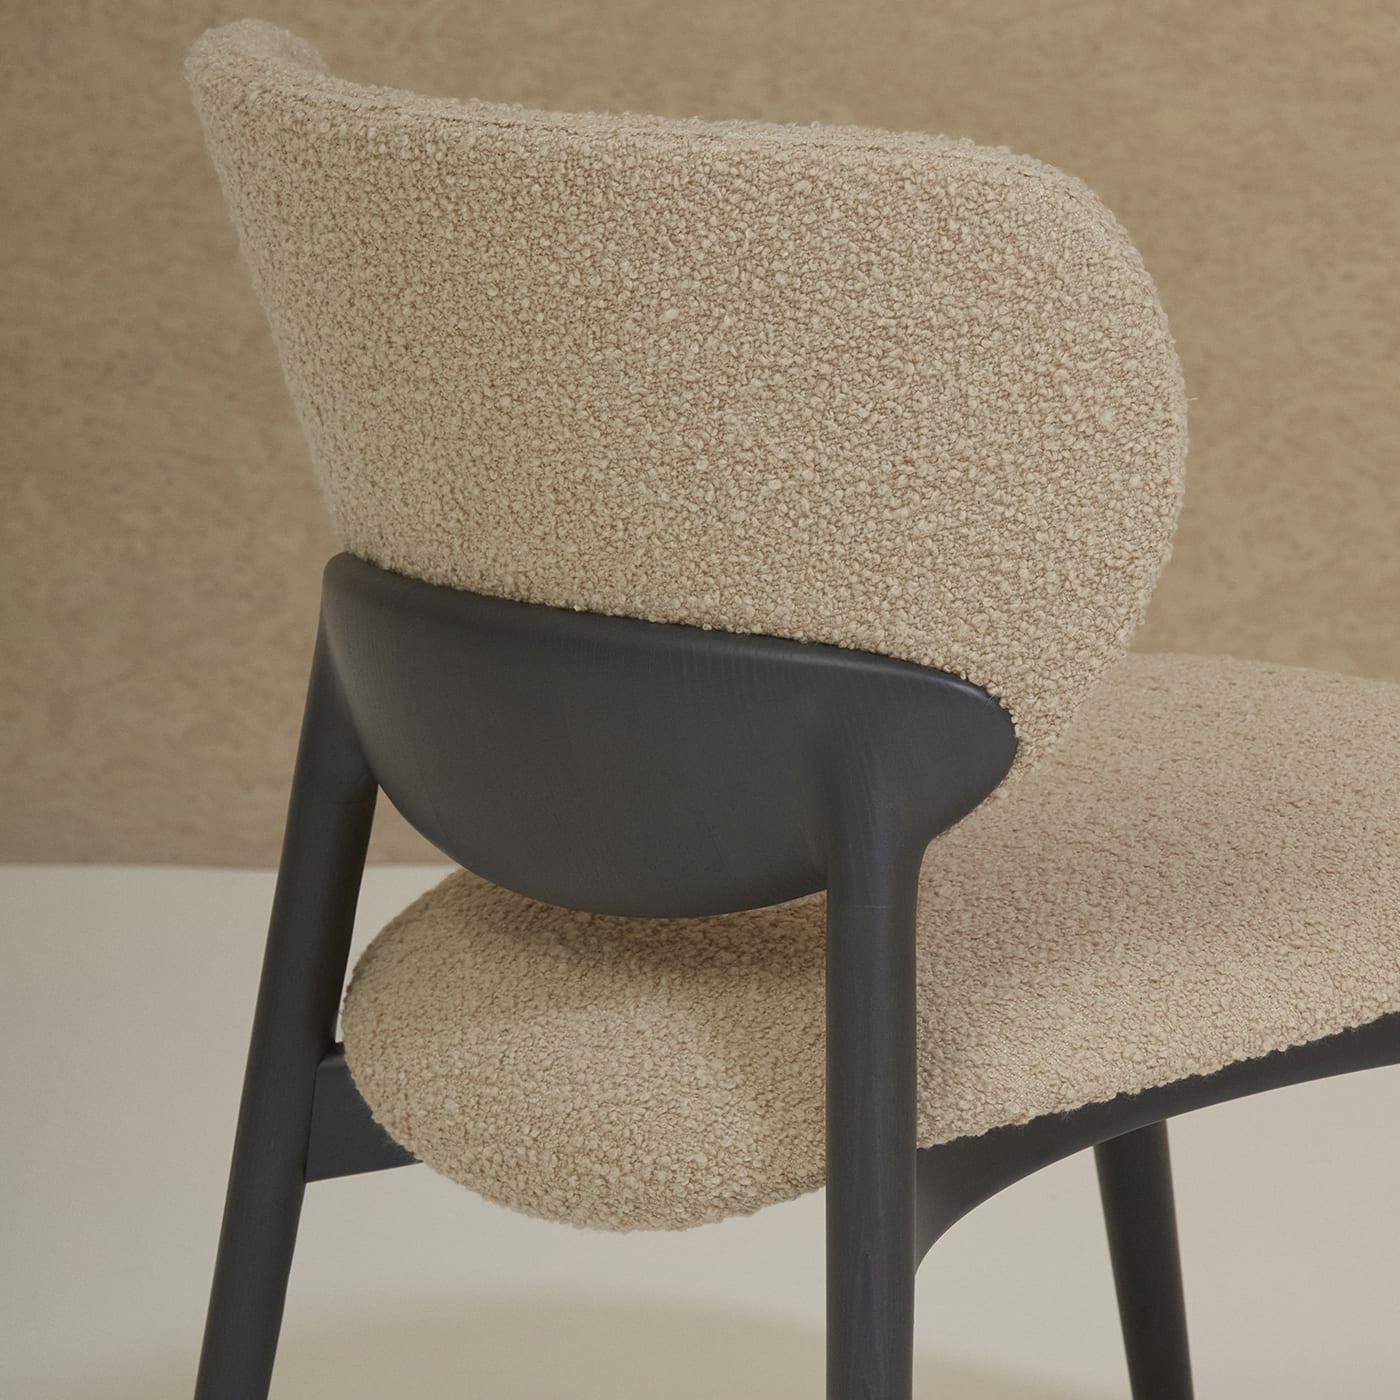 Proposée dans un contraste net mais harmonieux de tons neutres, cette chaise longue est un modèle raffiné d'inspiration moderne, parfait pour se fondre dans un bureau privé ou un salon. Le tissu Tresigallo (2893) texturé de couleur beige habille